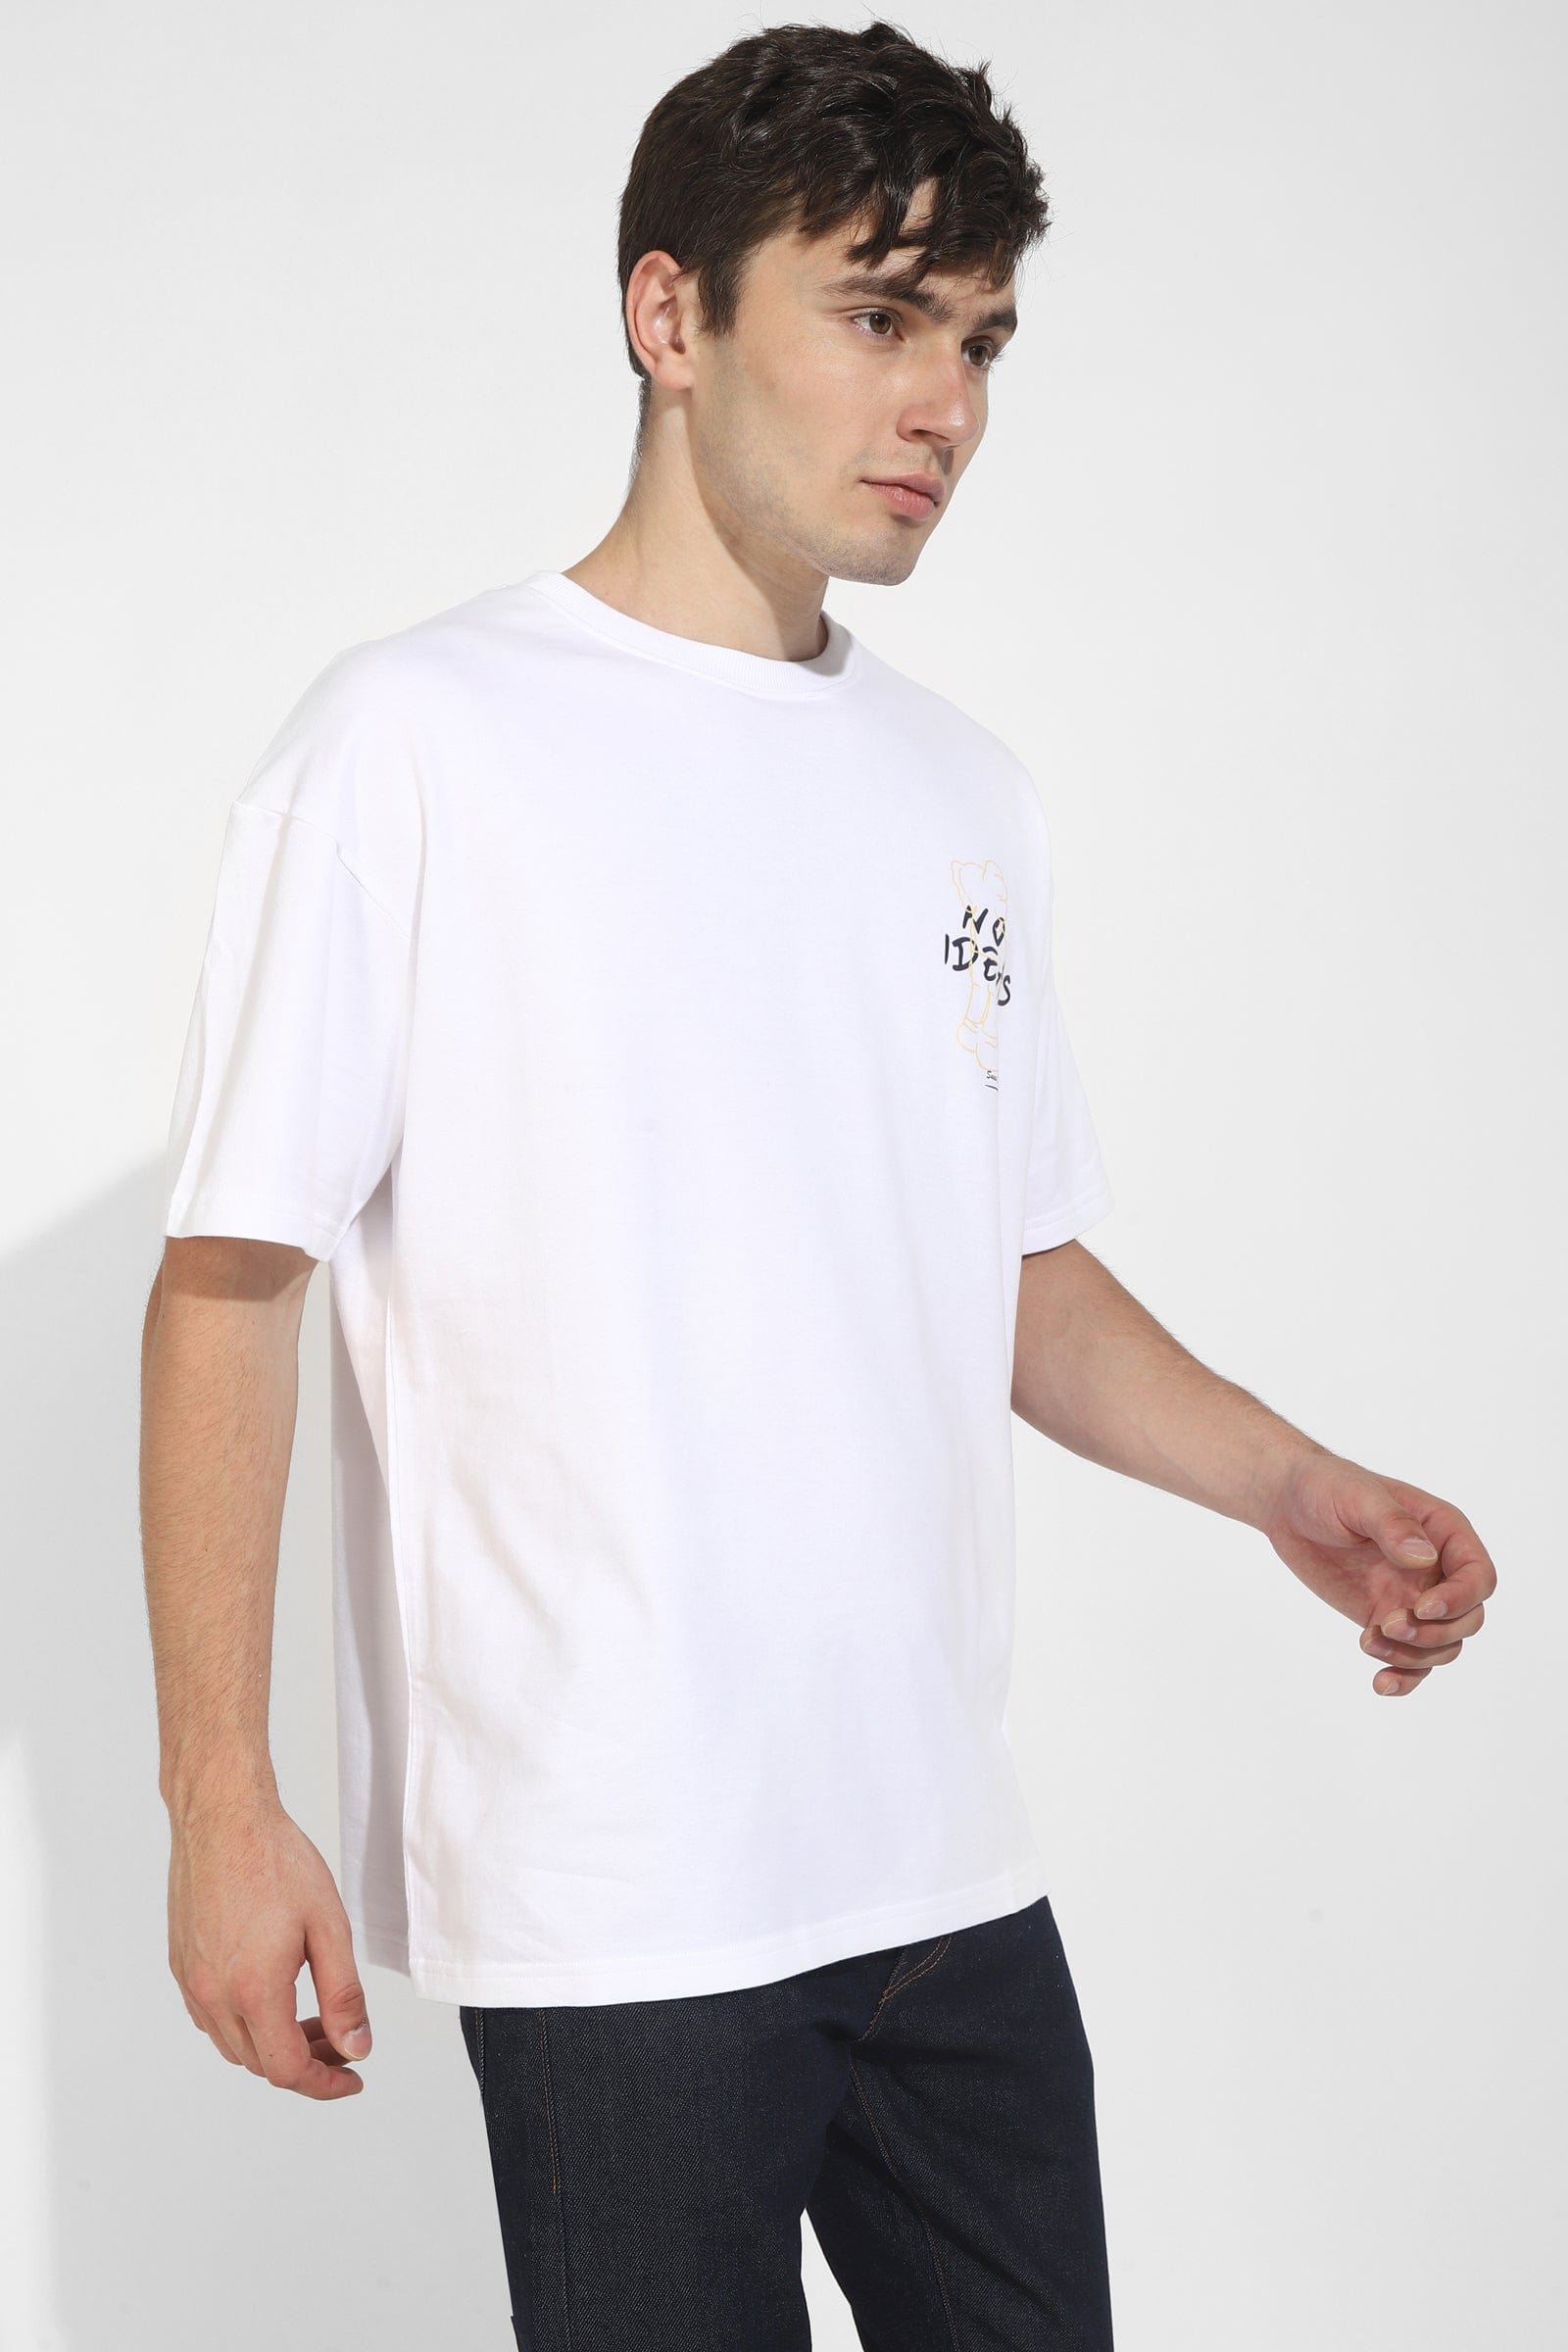 No Ideas White Oversized Unisex T-Shirt By Purple Mango